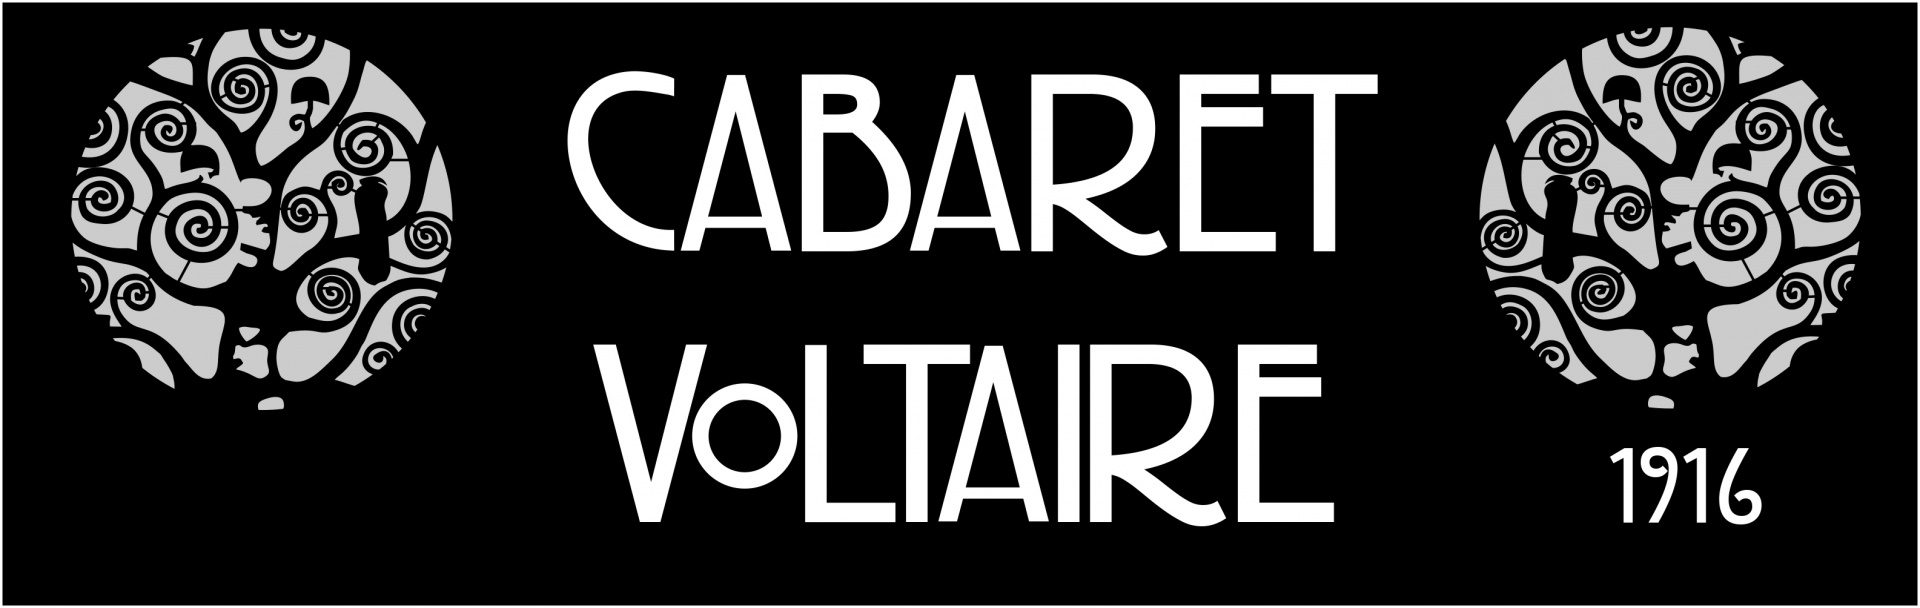 Cabaret Voltaire 1916